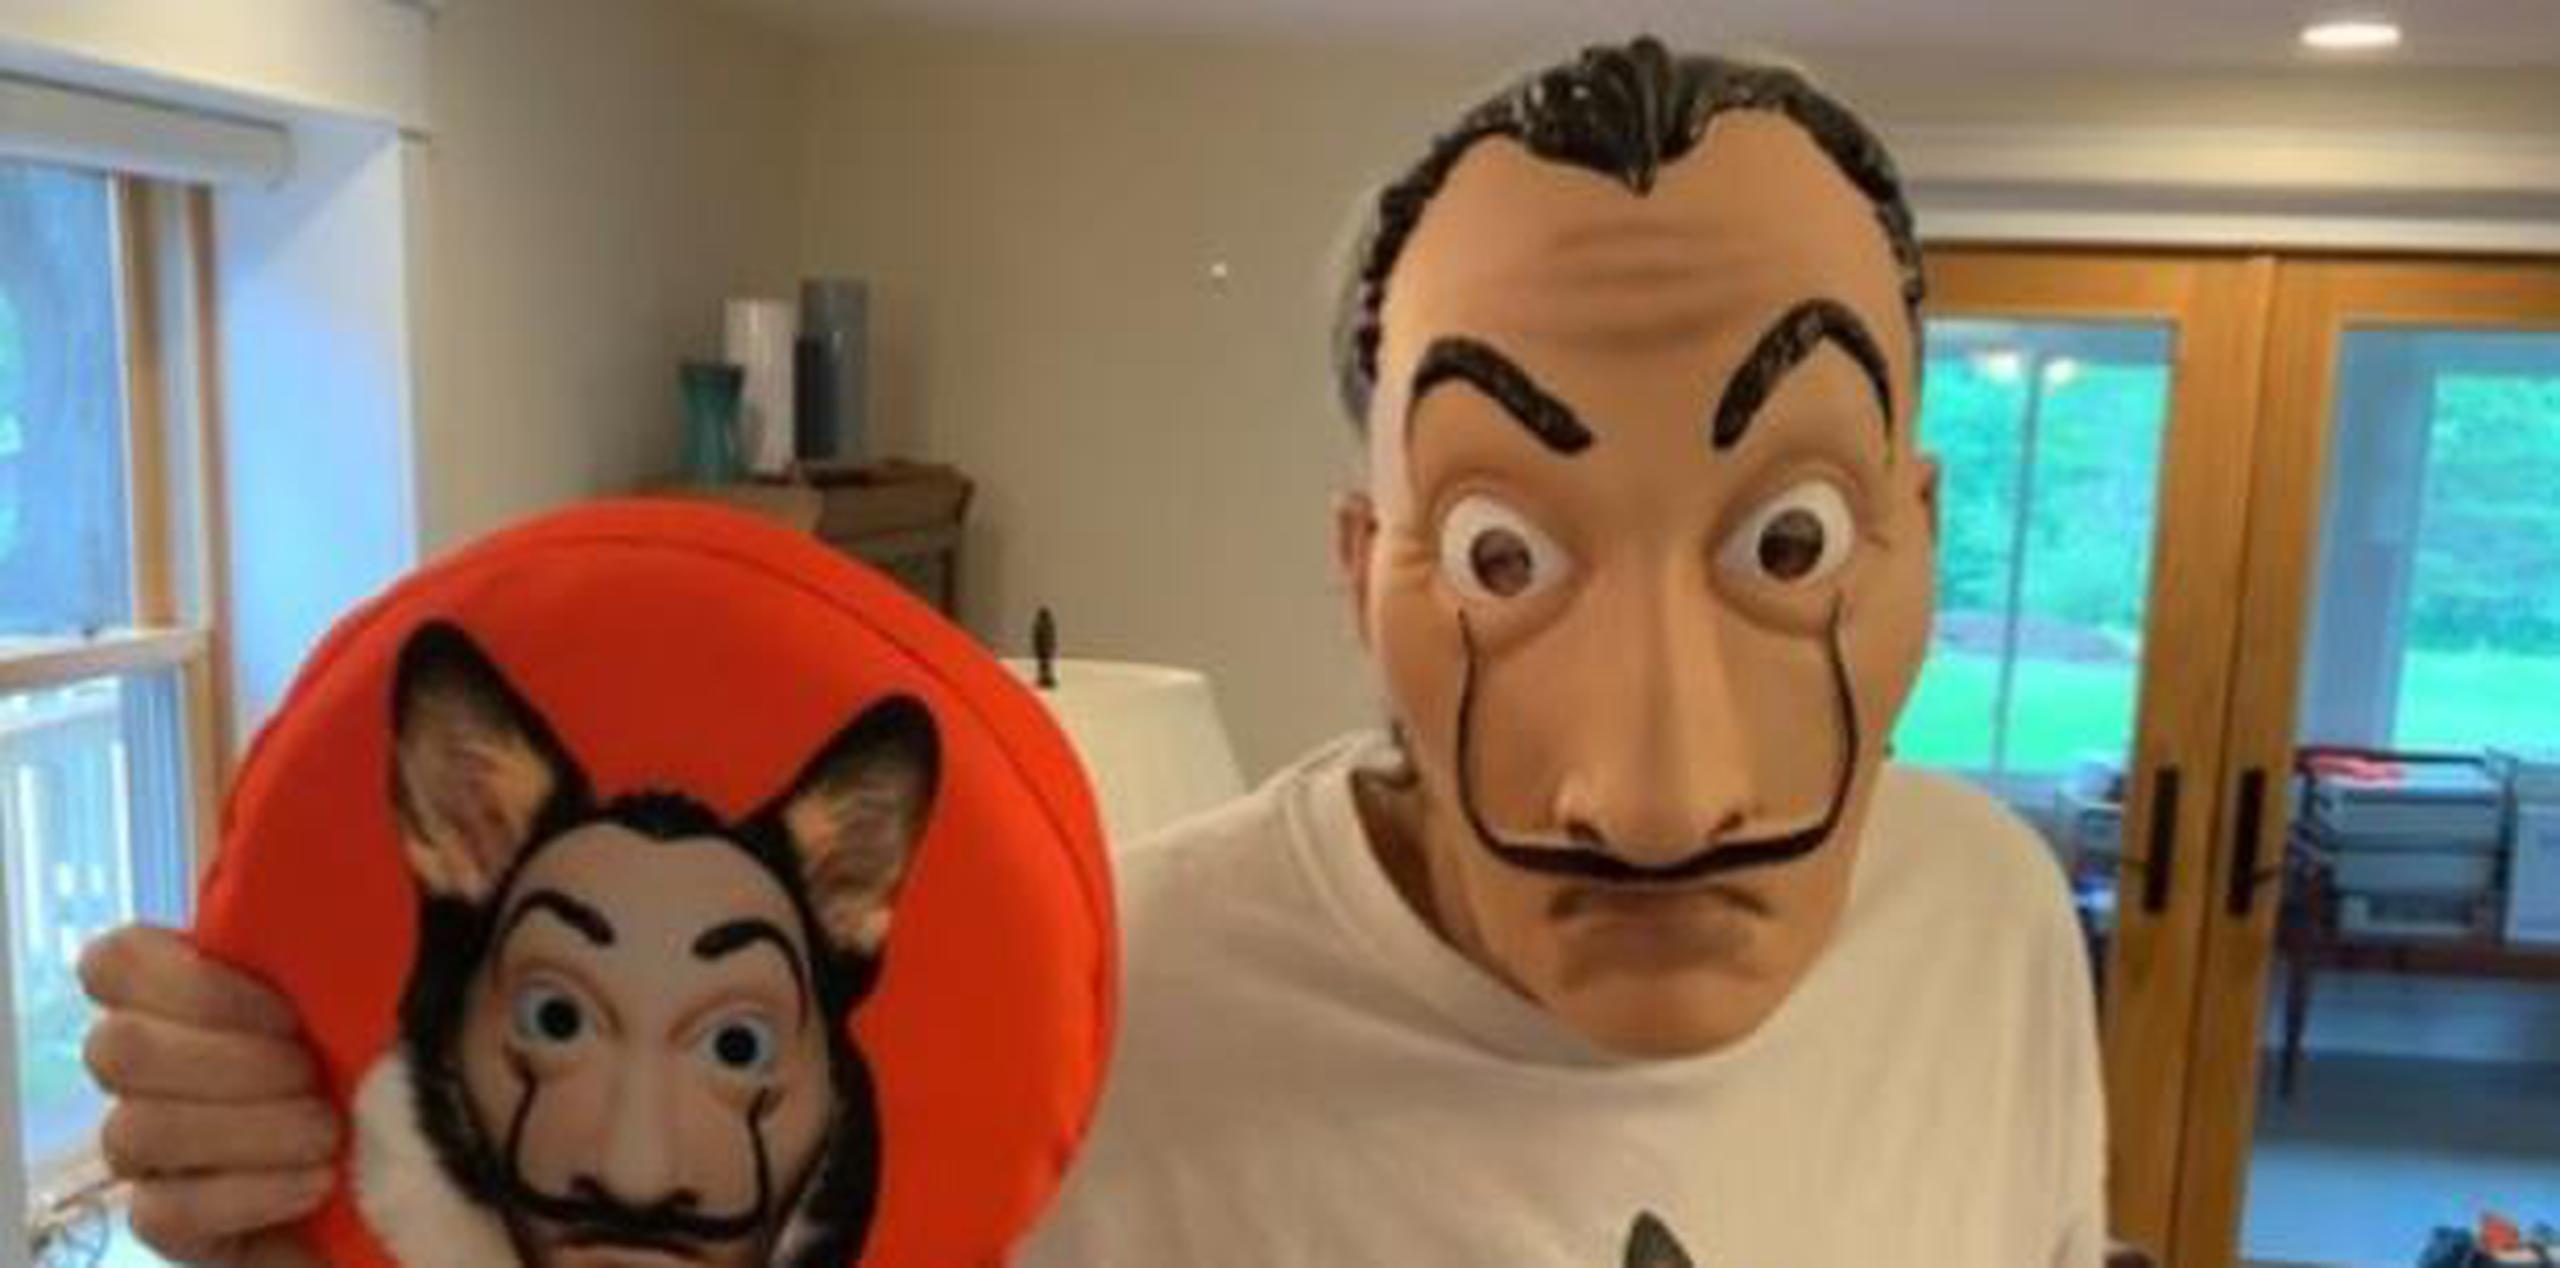 King, maestro de la ficción, no dudó en ponerse la máscara de Dalí que usan los miembros de la banda. (Twitter)